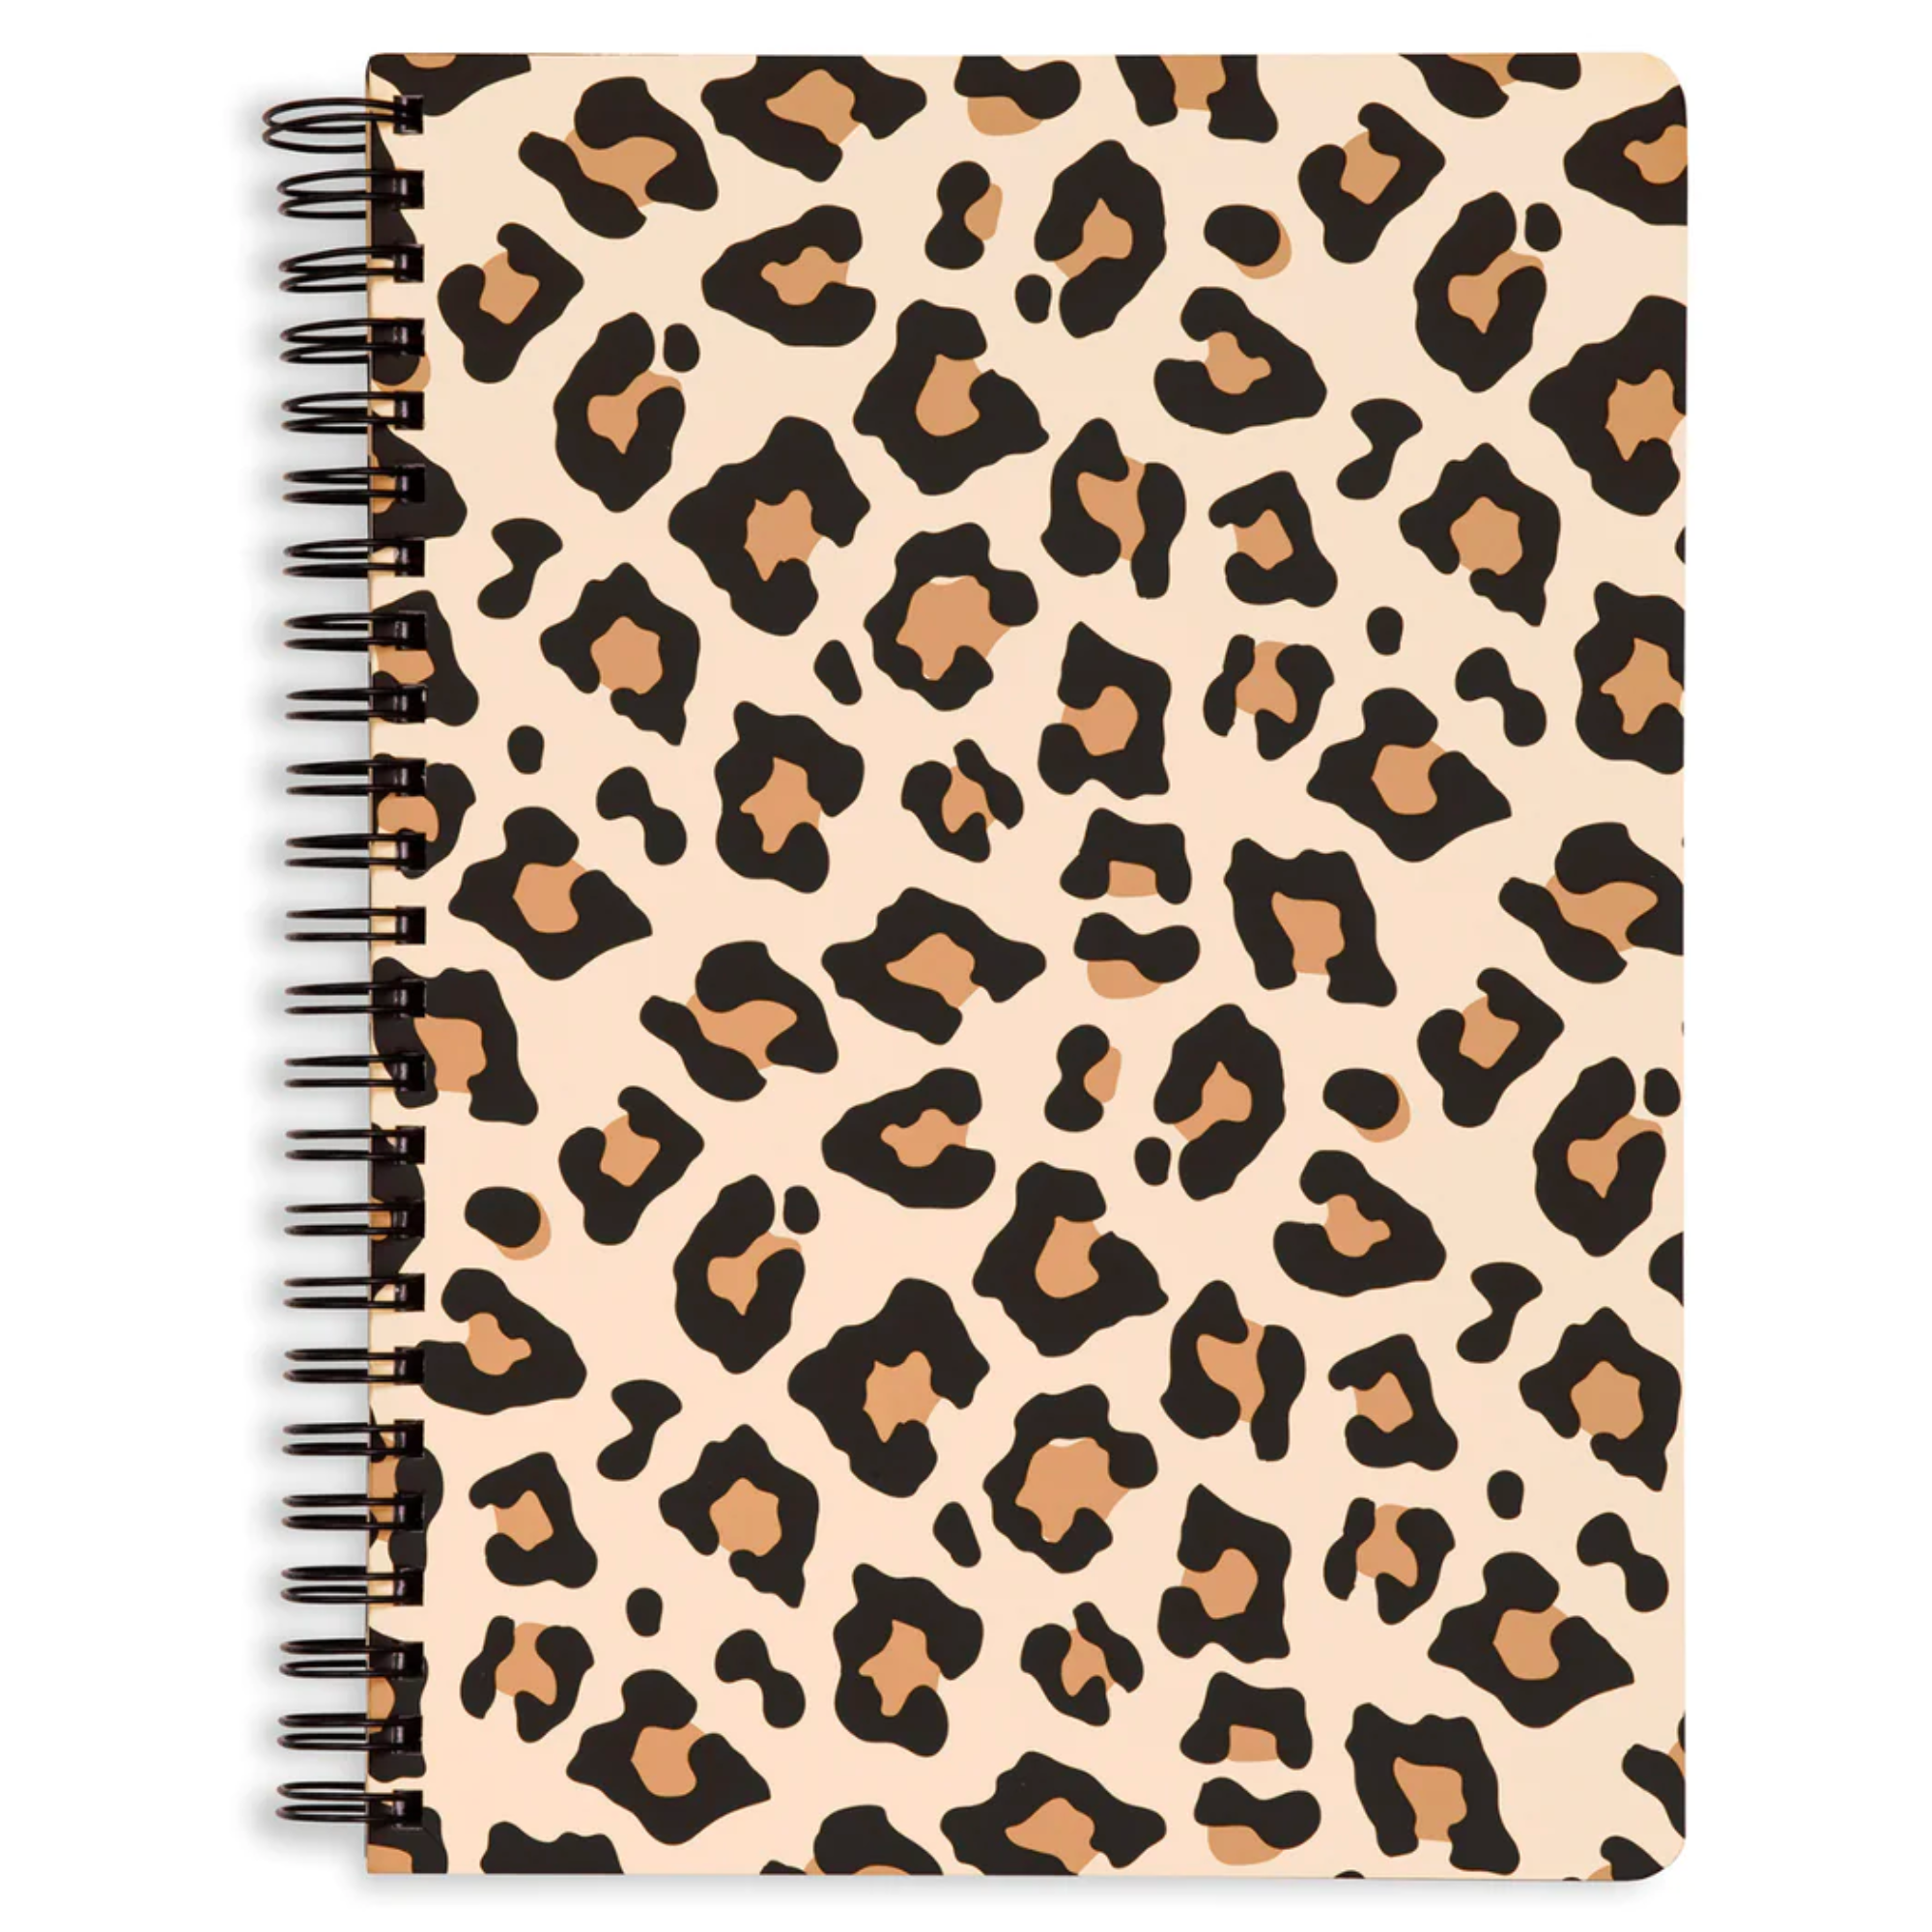 Mini Notebook, Leopard